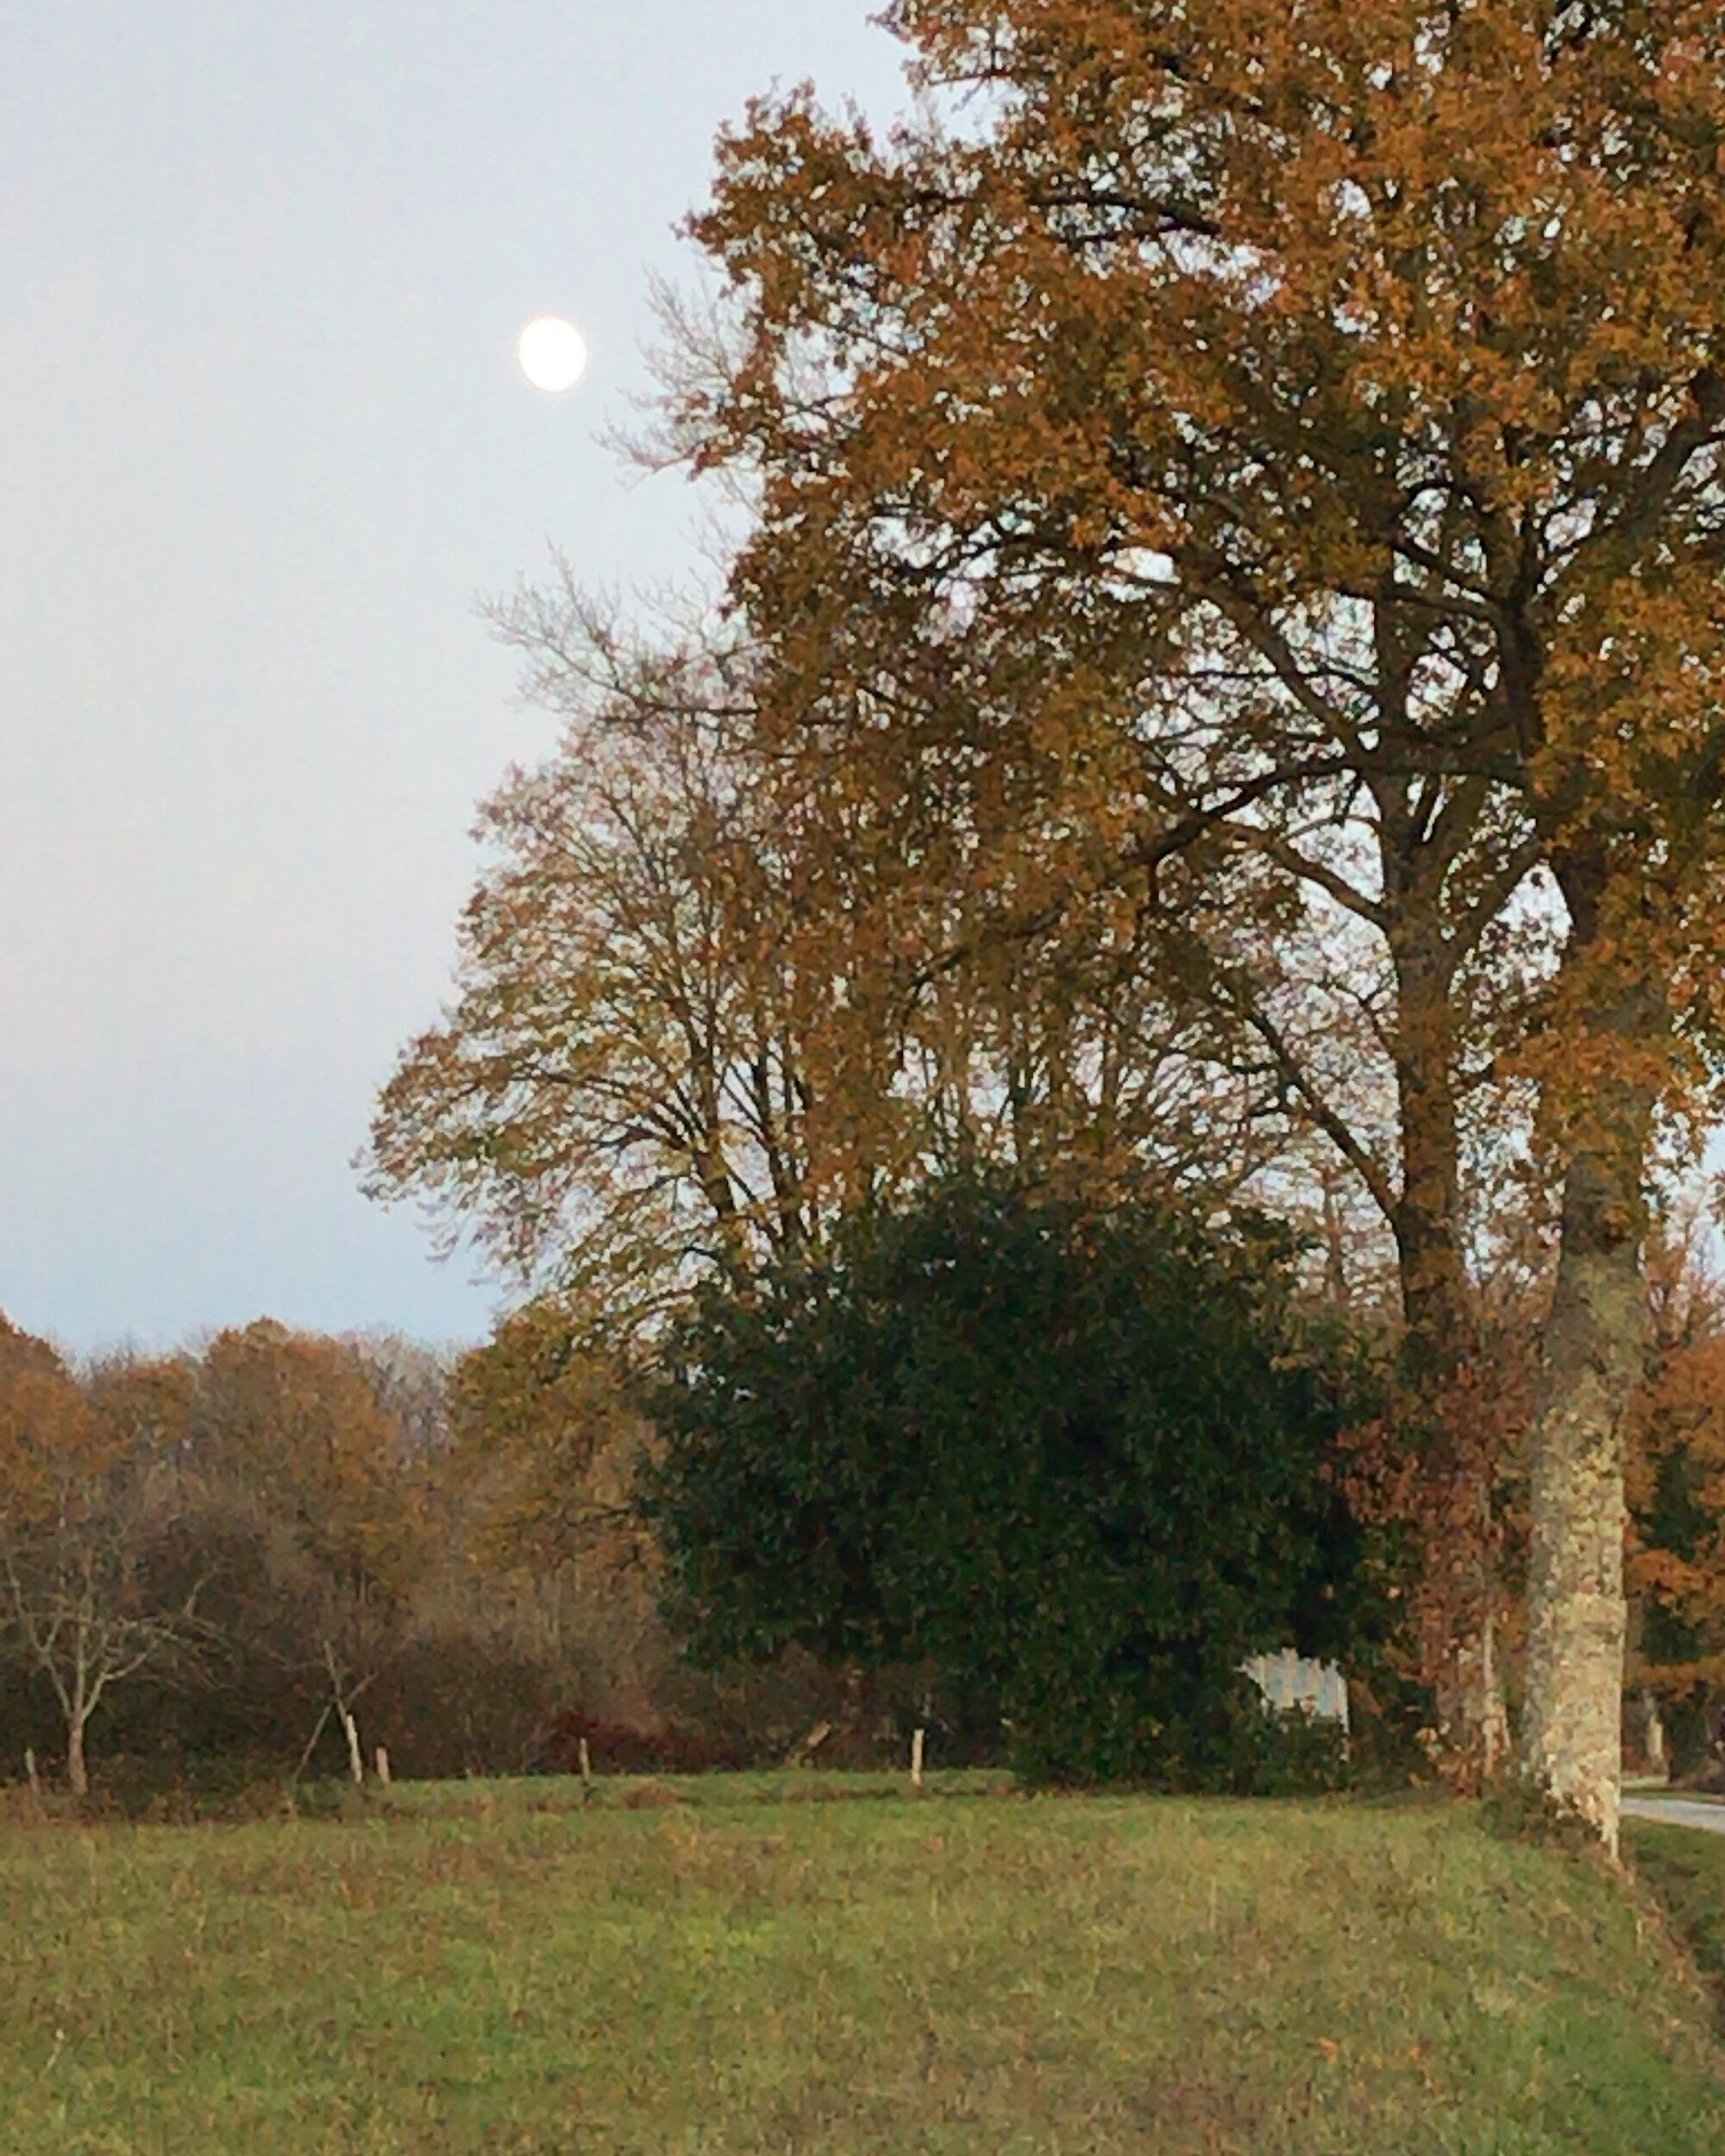 Moon rising behind oak trees in November.